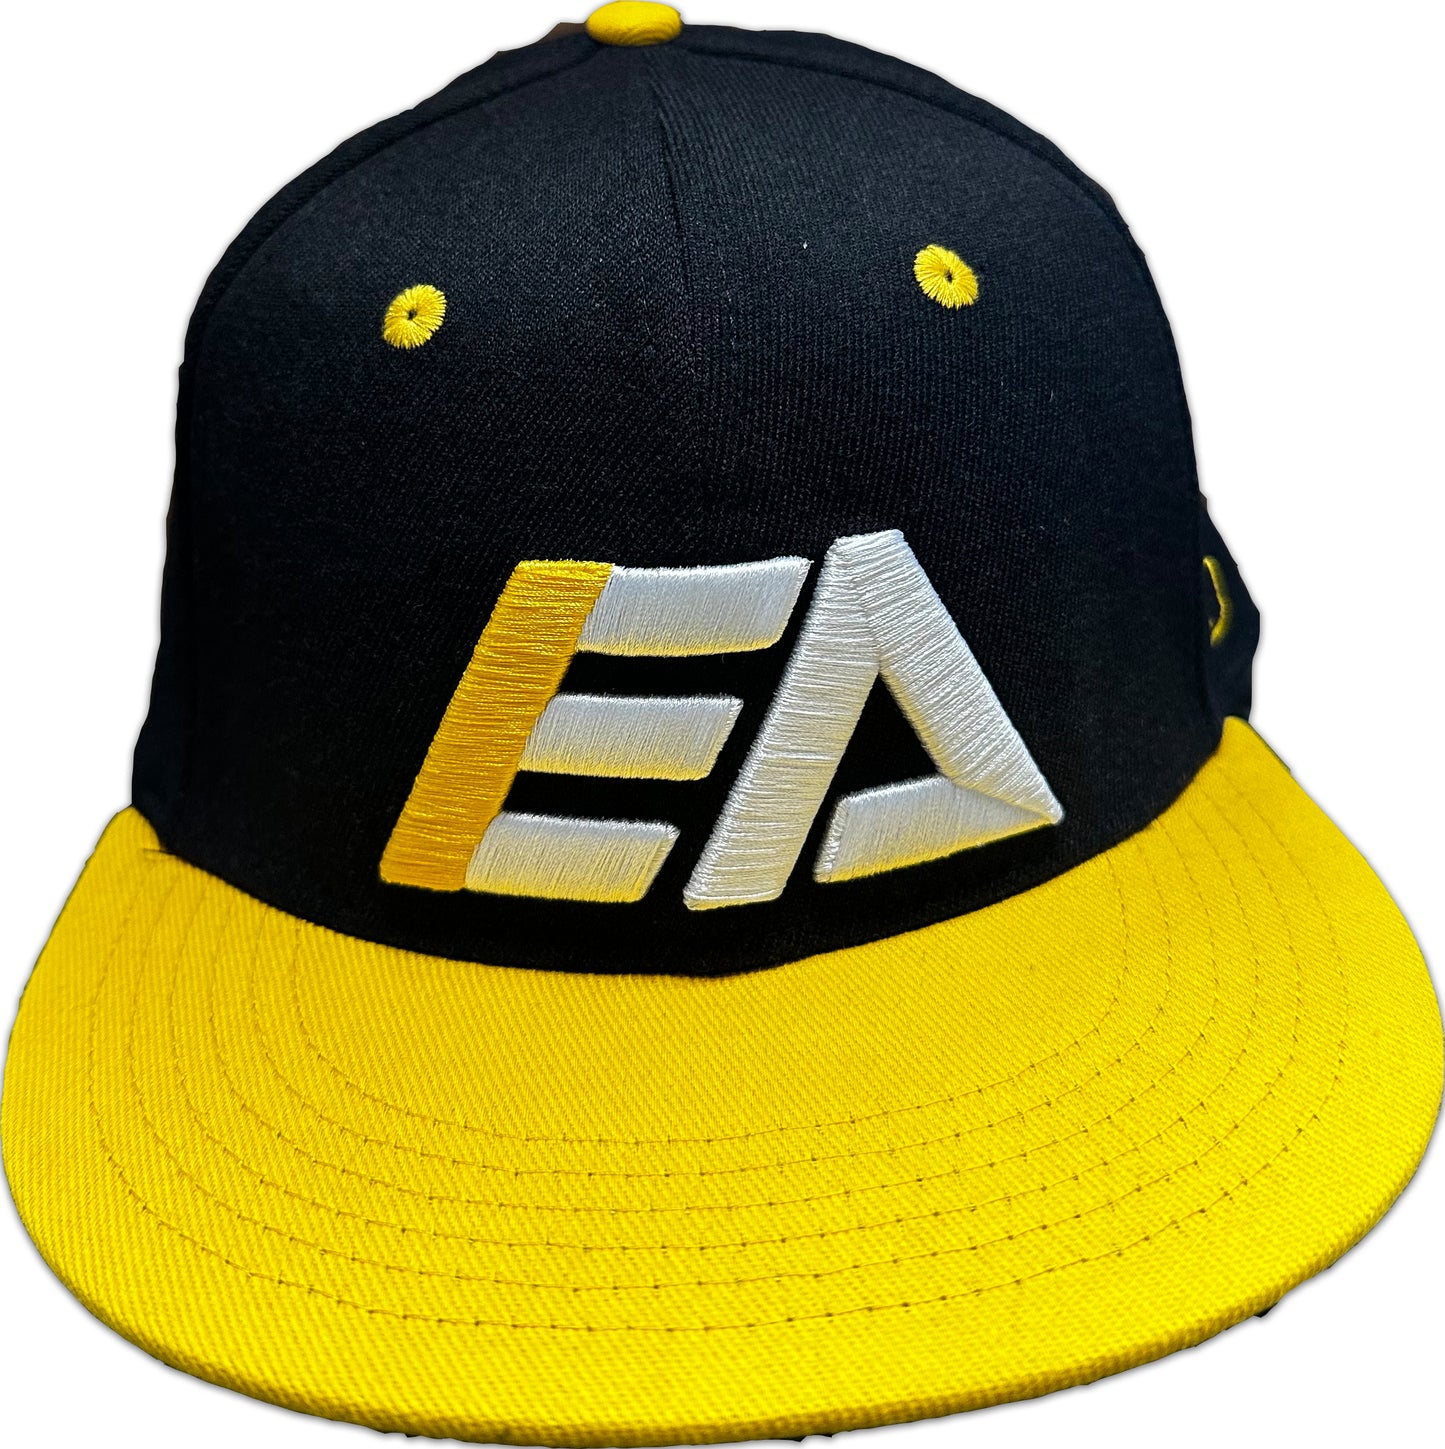 EA Team Hat V2